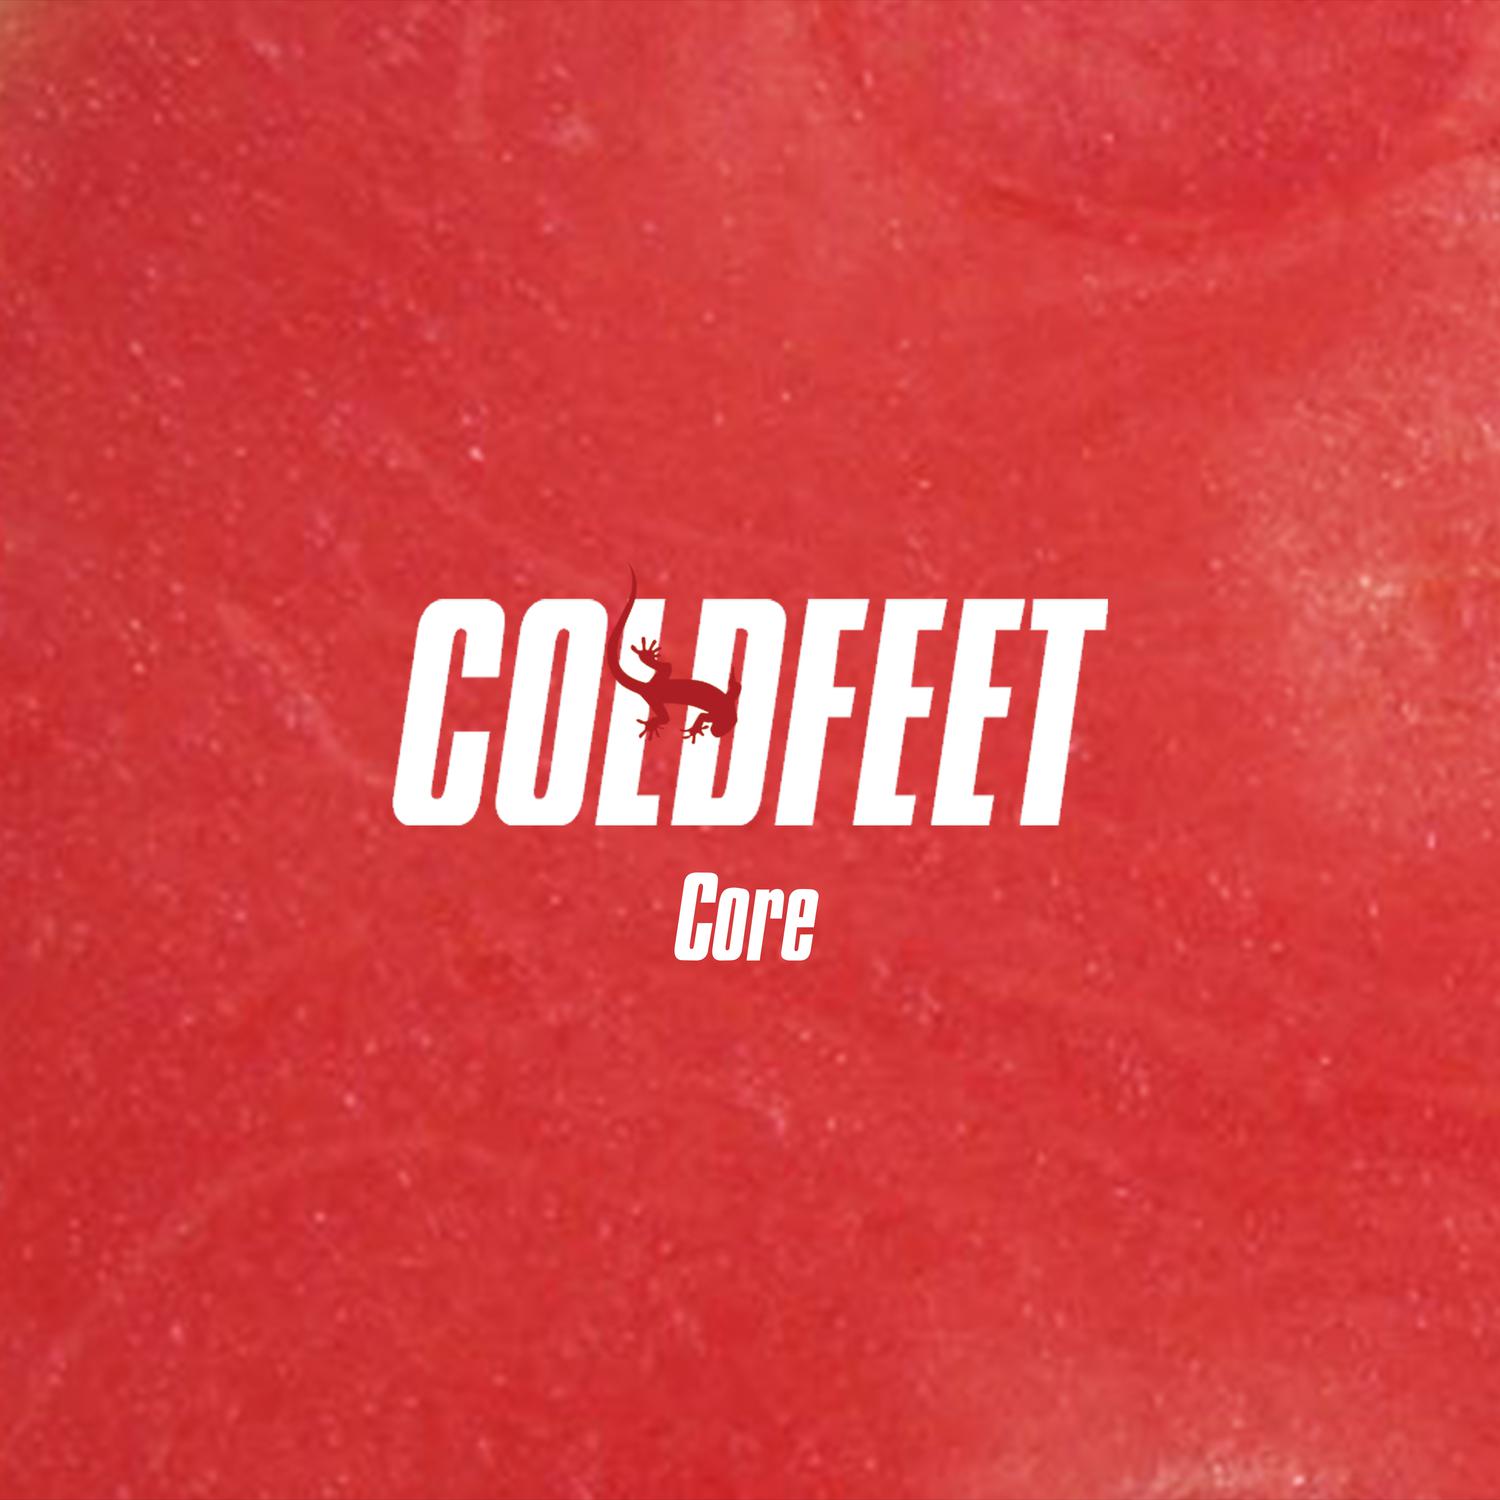 COLDFEET - More More More